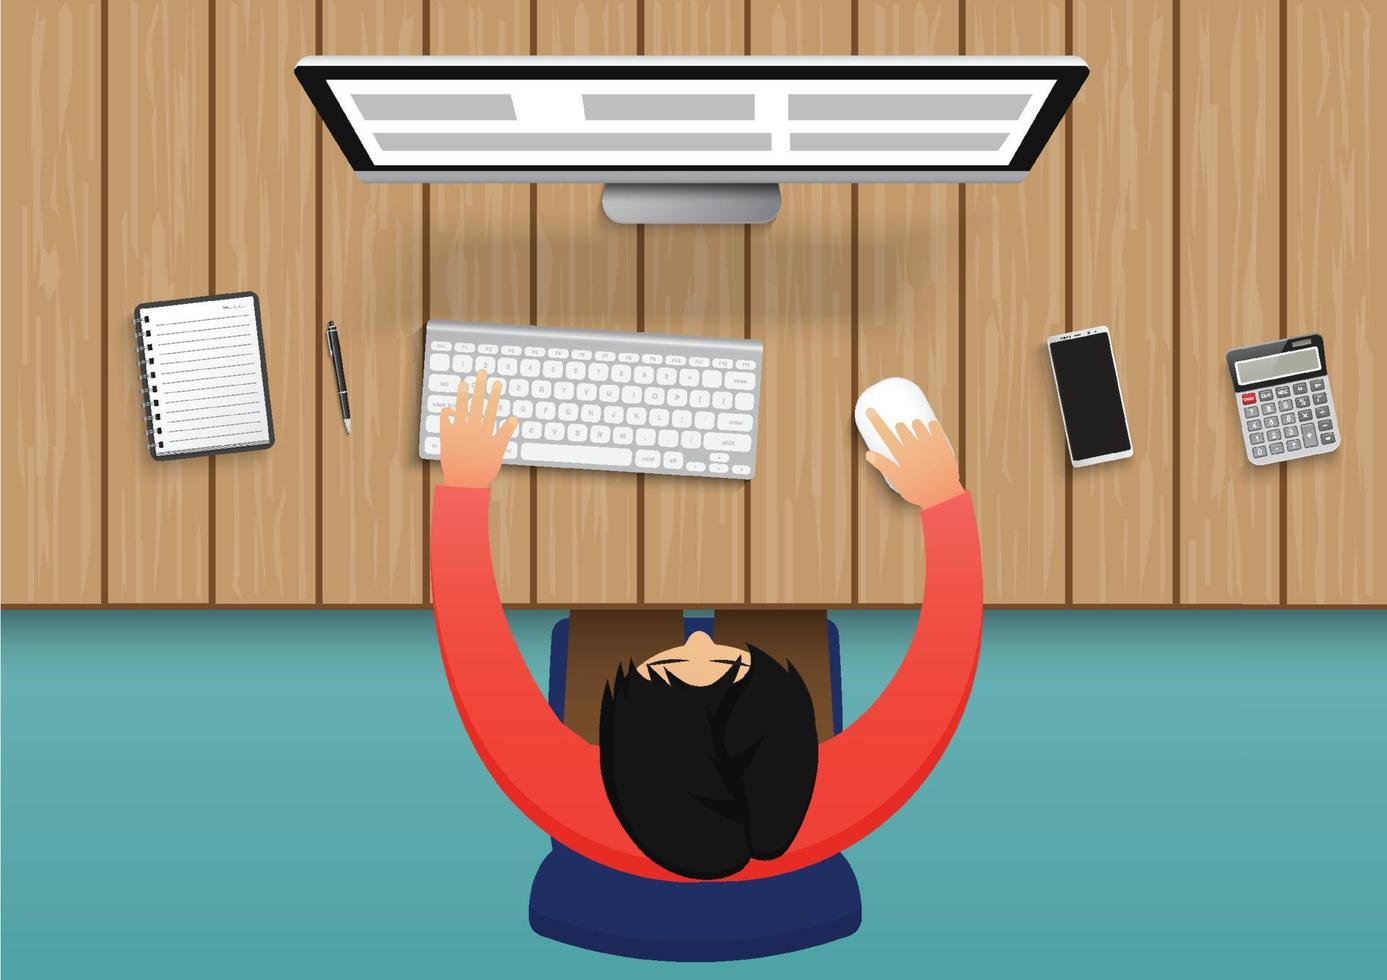 bedrijfspersoon die aan computer werkt. zakenman zittend op een blauwe stoel bovenaanzicht het bureau met kantoorapparatuur. vector platte illustratie Characterdesign op achtergrond.